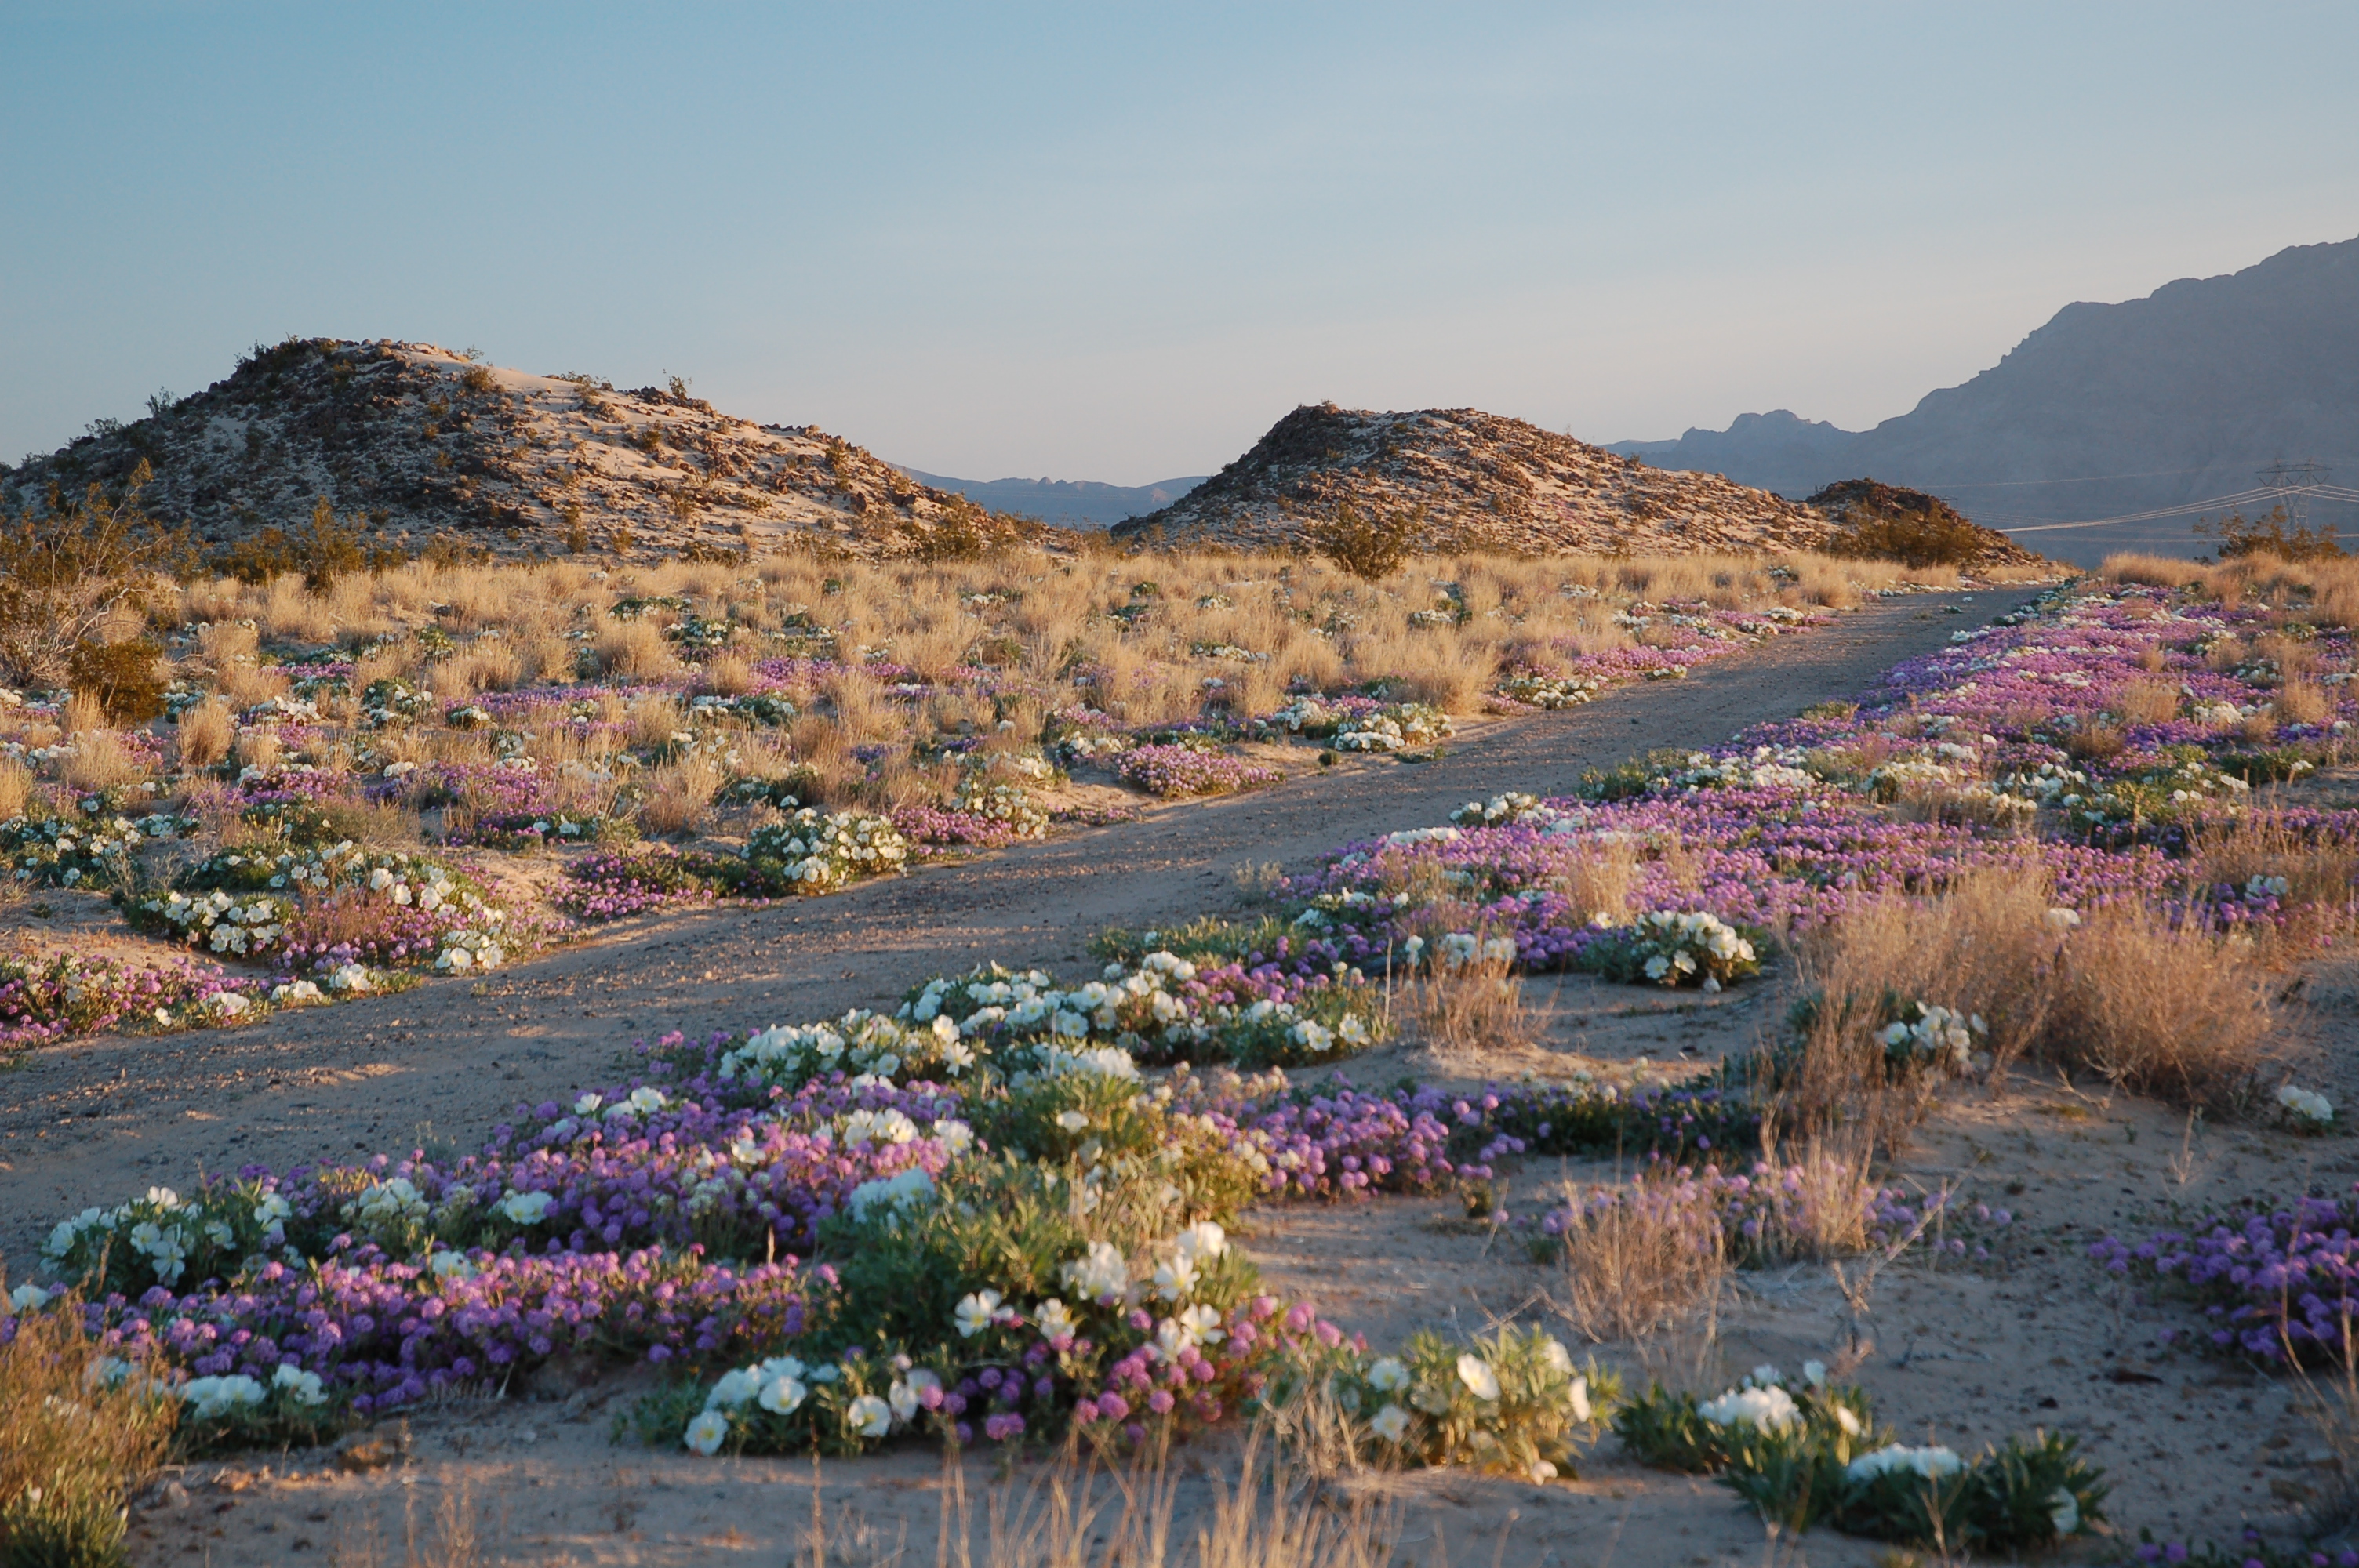 Spring wildflowers carpeting the desert floor